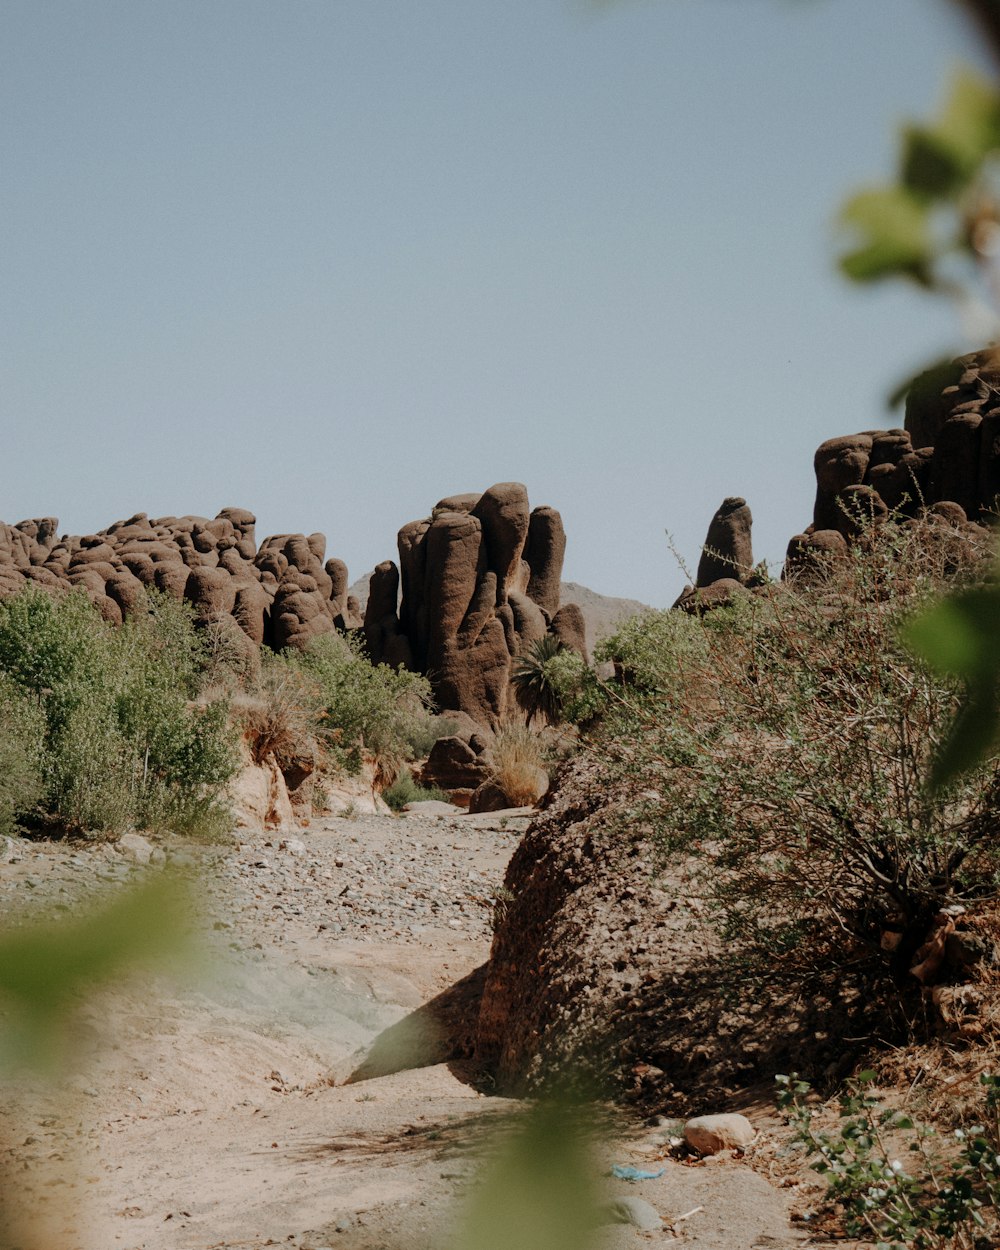 Un grupo de grandes rocas en medio de un desierto